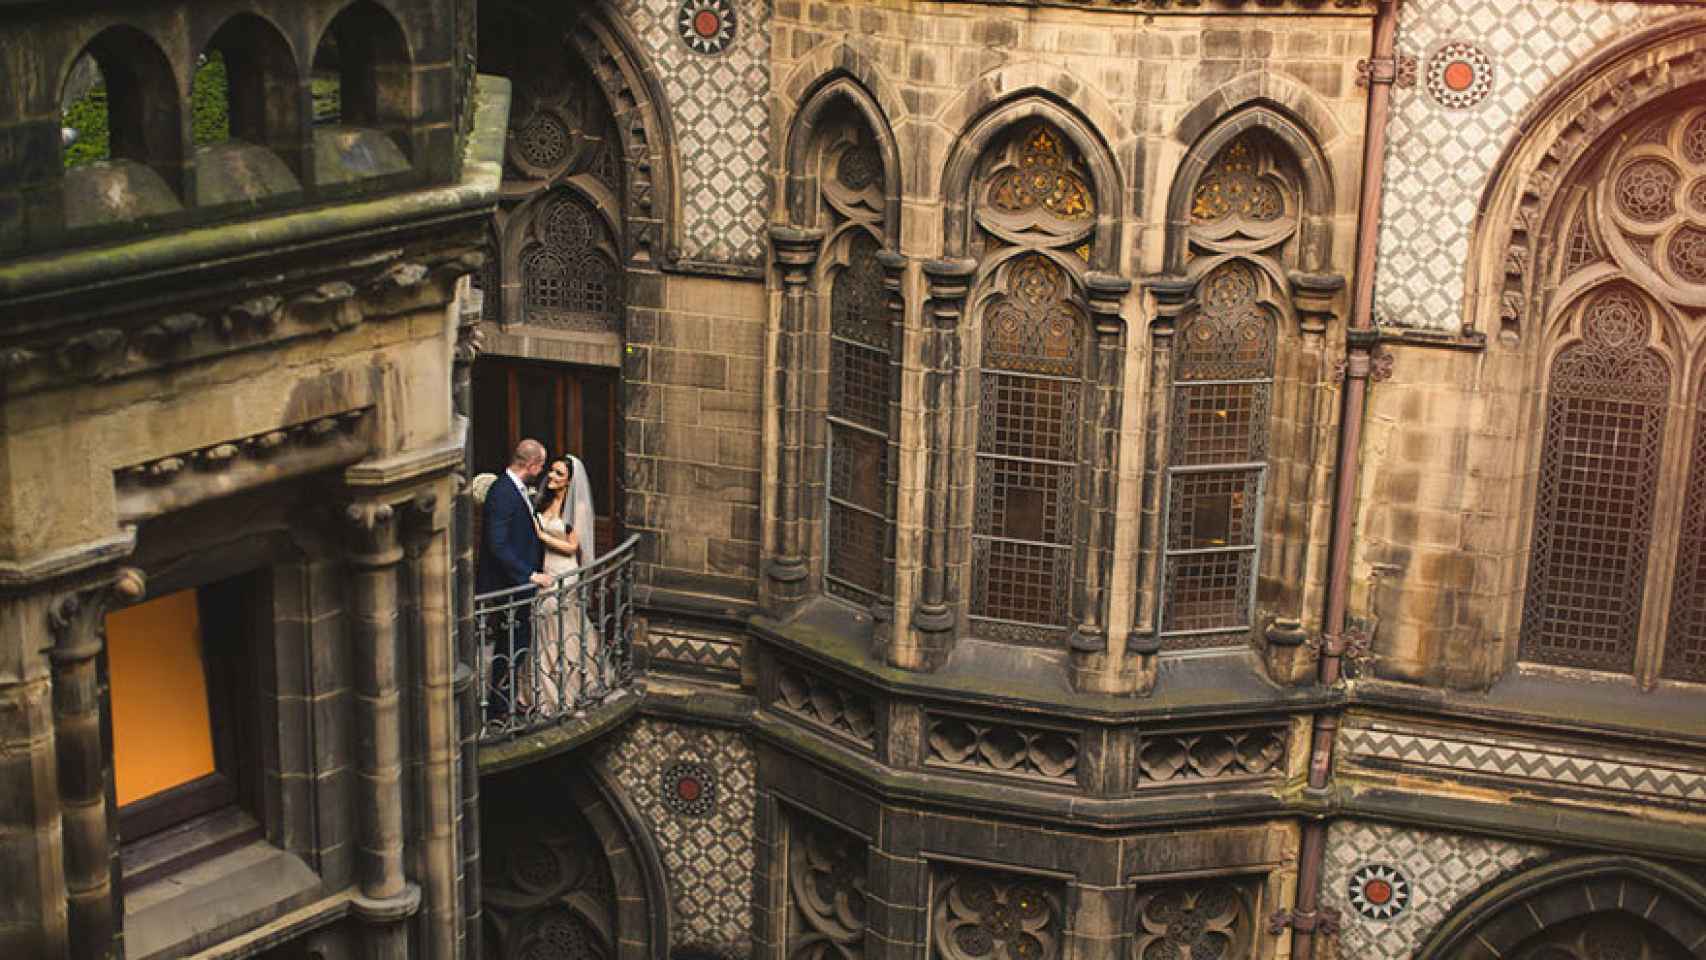 La pareja posa en uno de los balcones del edificio.